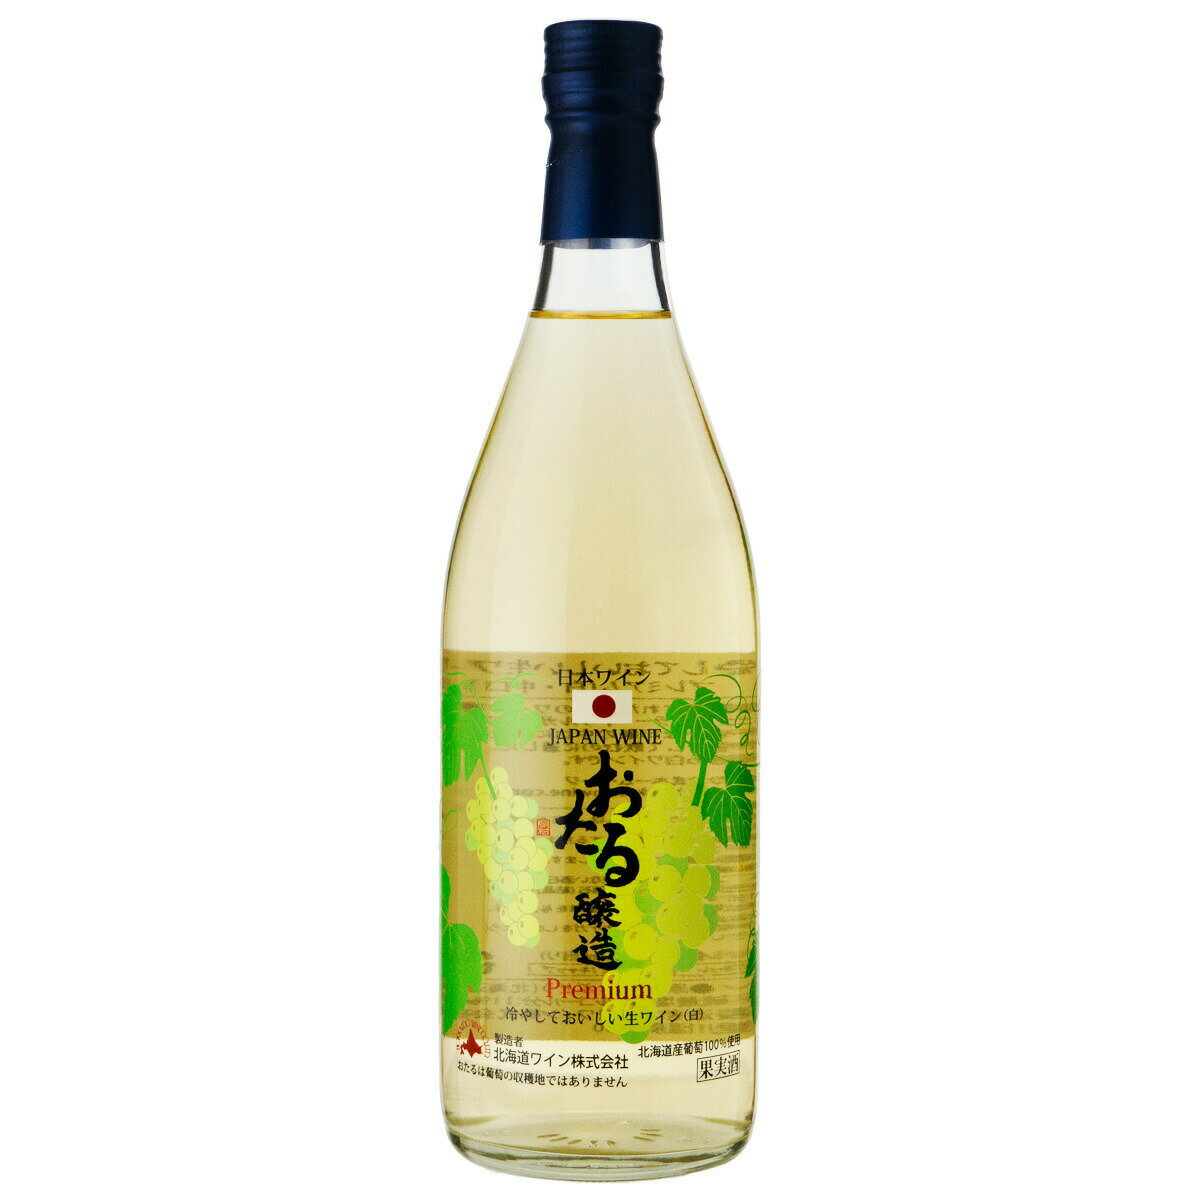 北海道ワイン おたる醸造 プレミアム 冷やしておいしい生ワイン 中口 720ml 白ワイン 北海道 (hk04-6611)